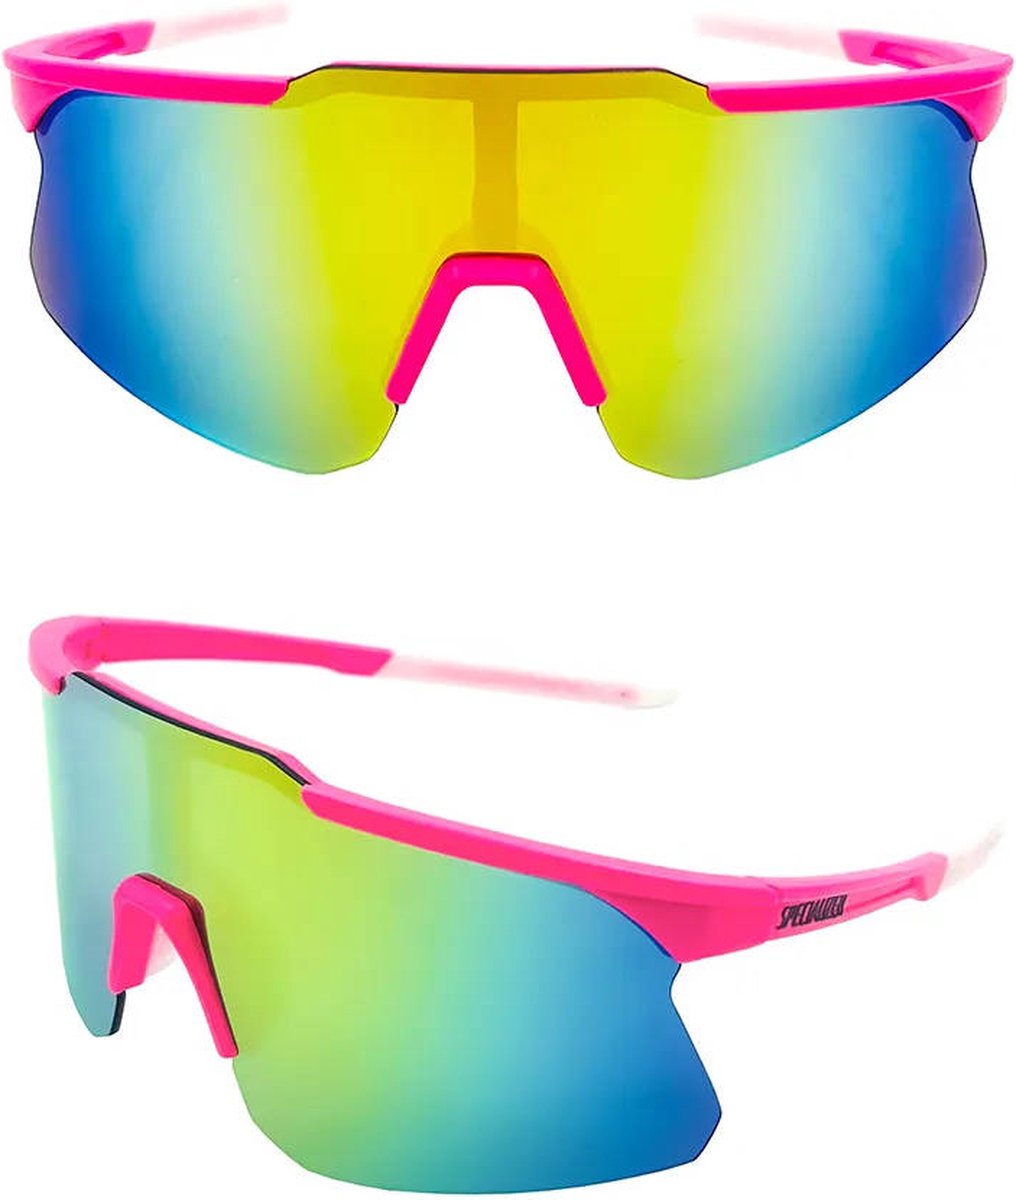 Specialized Fietsbril - Racefiets - Sportbril - Mountainbike - Unisex - UV-bescherming - 155mm - Roze Groen